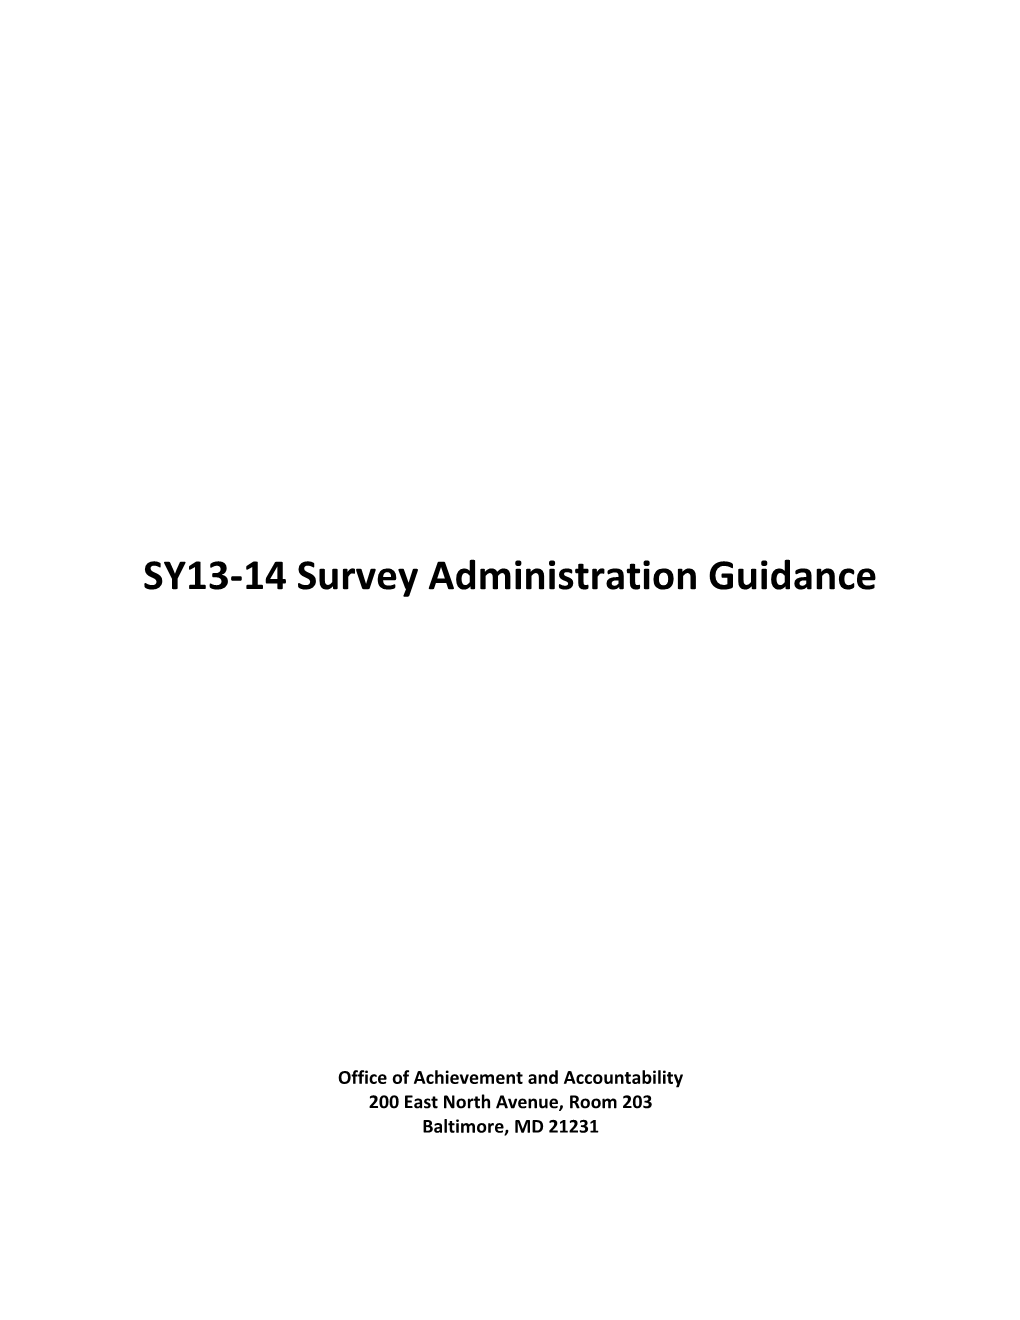 Baltimore City Public Schools School Climate Survey 2009 Instructions